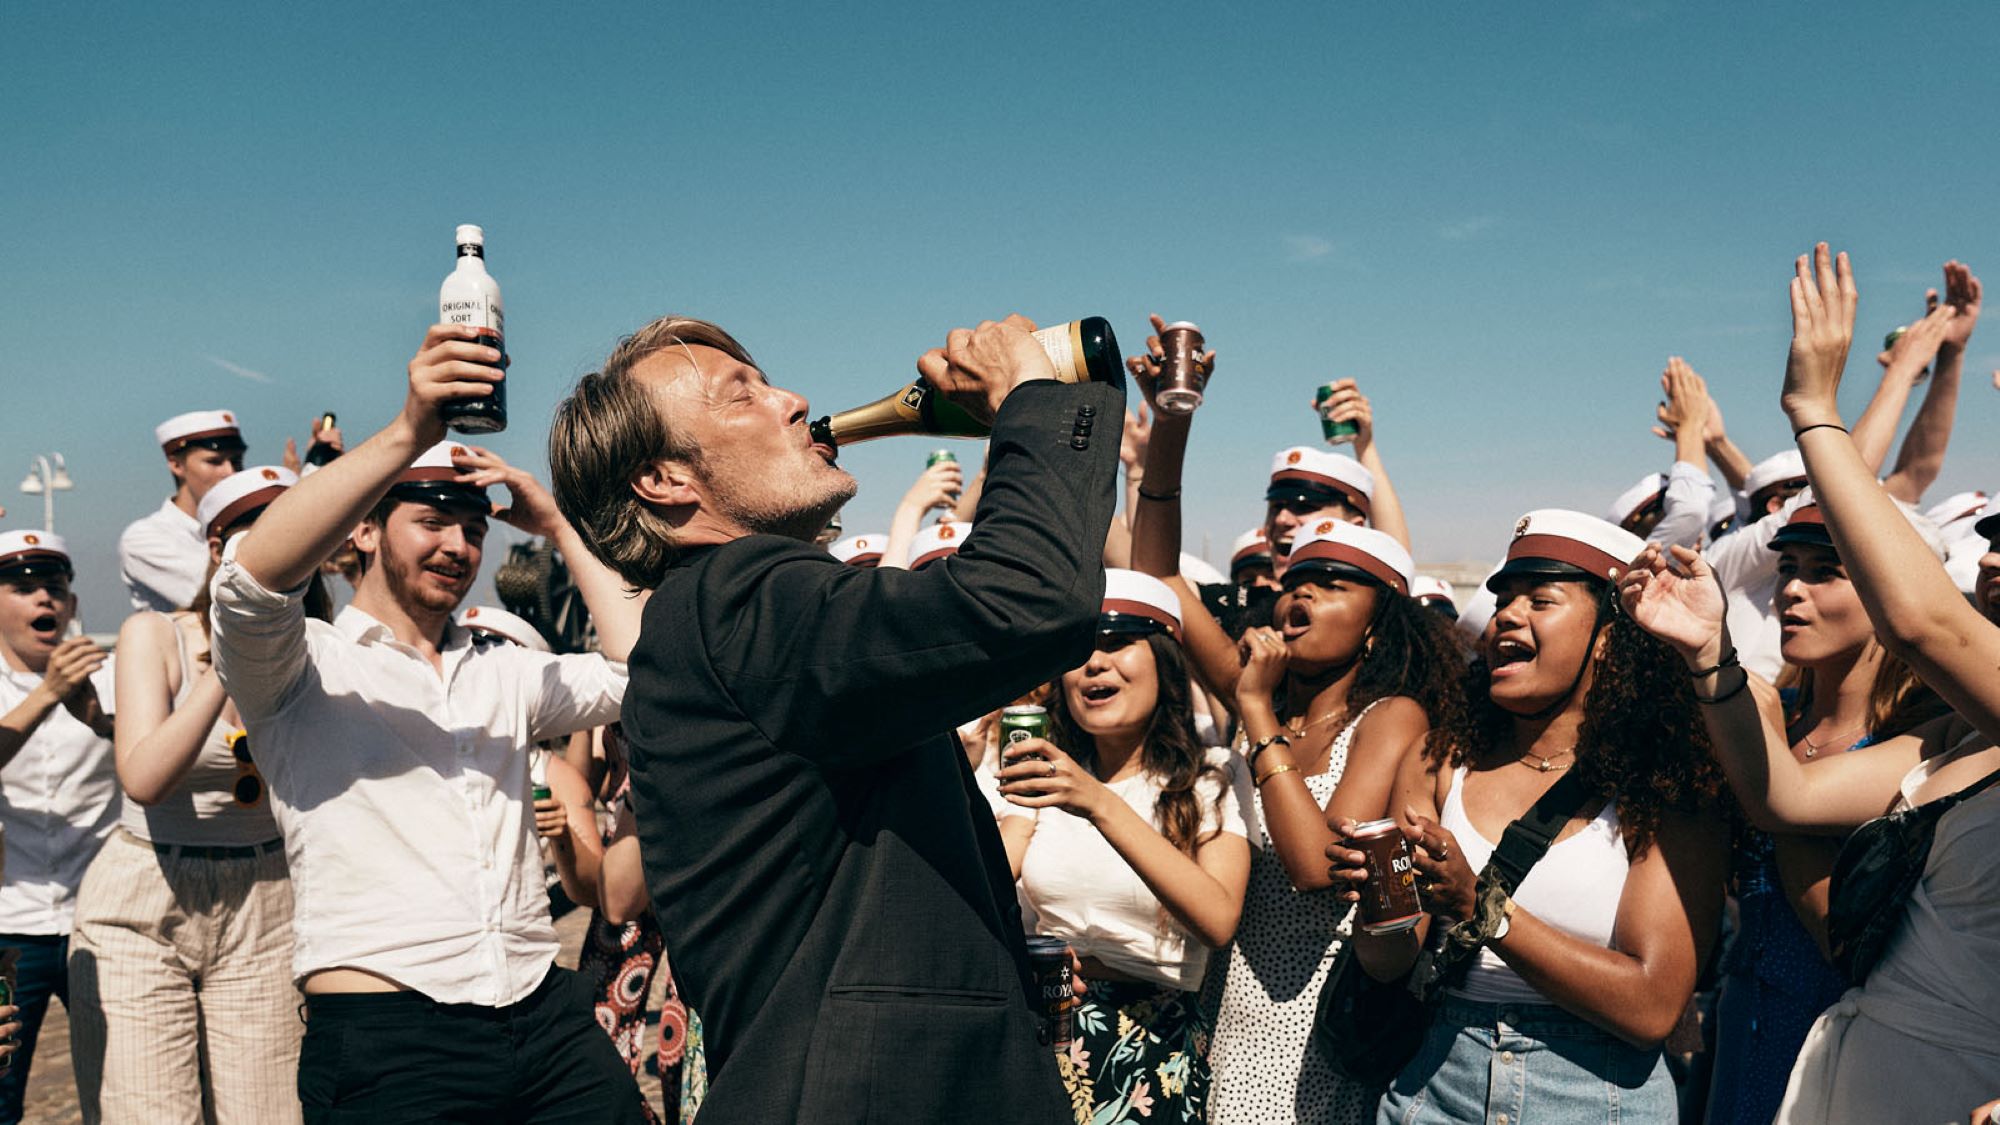 Mads Mikkelsen, der Hauptdarsteller des Films "Der Rausch", trinkt aus einer Sektflasche. Er ist umringt von einer Gruppe jubelnder Abiturienten, die weiße Schulmützen tragen. Viele halten Flaschen oder Dosen in der Hand und prosten ihrem Lehrer zu.